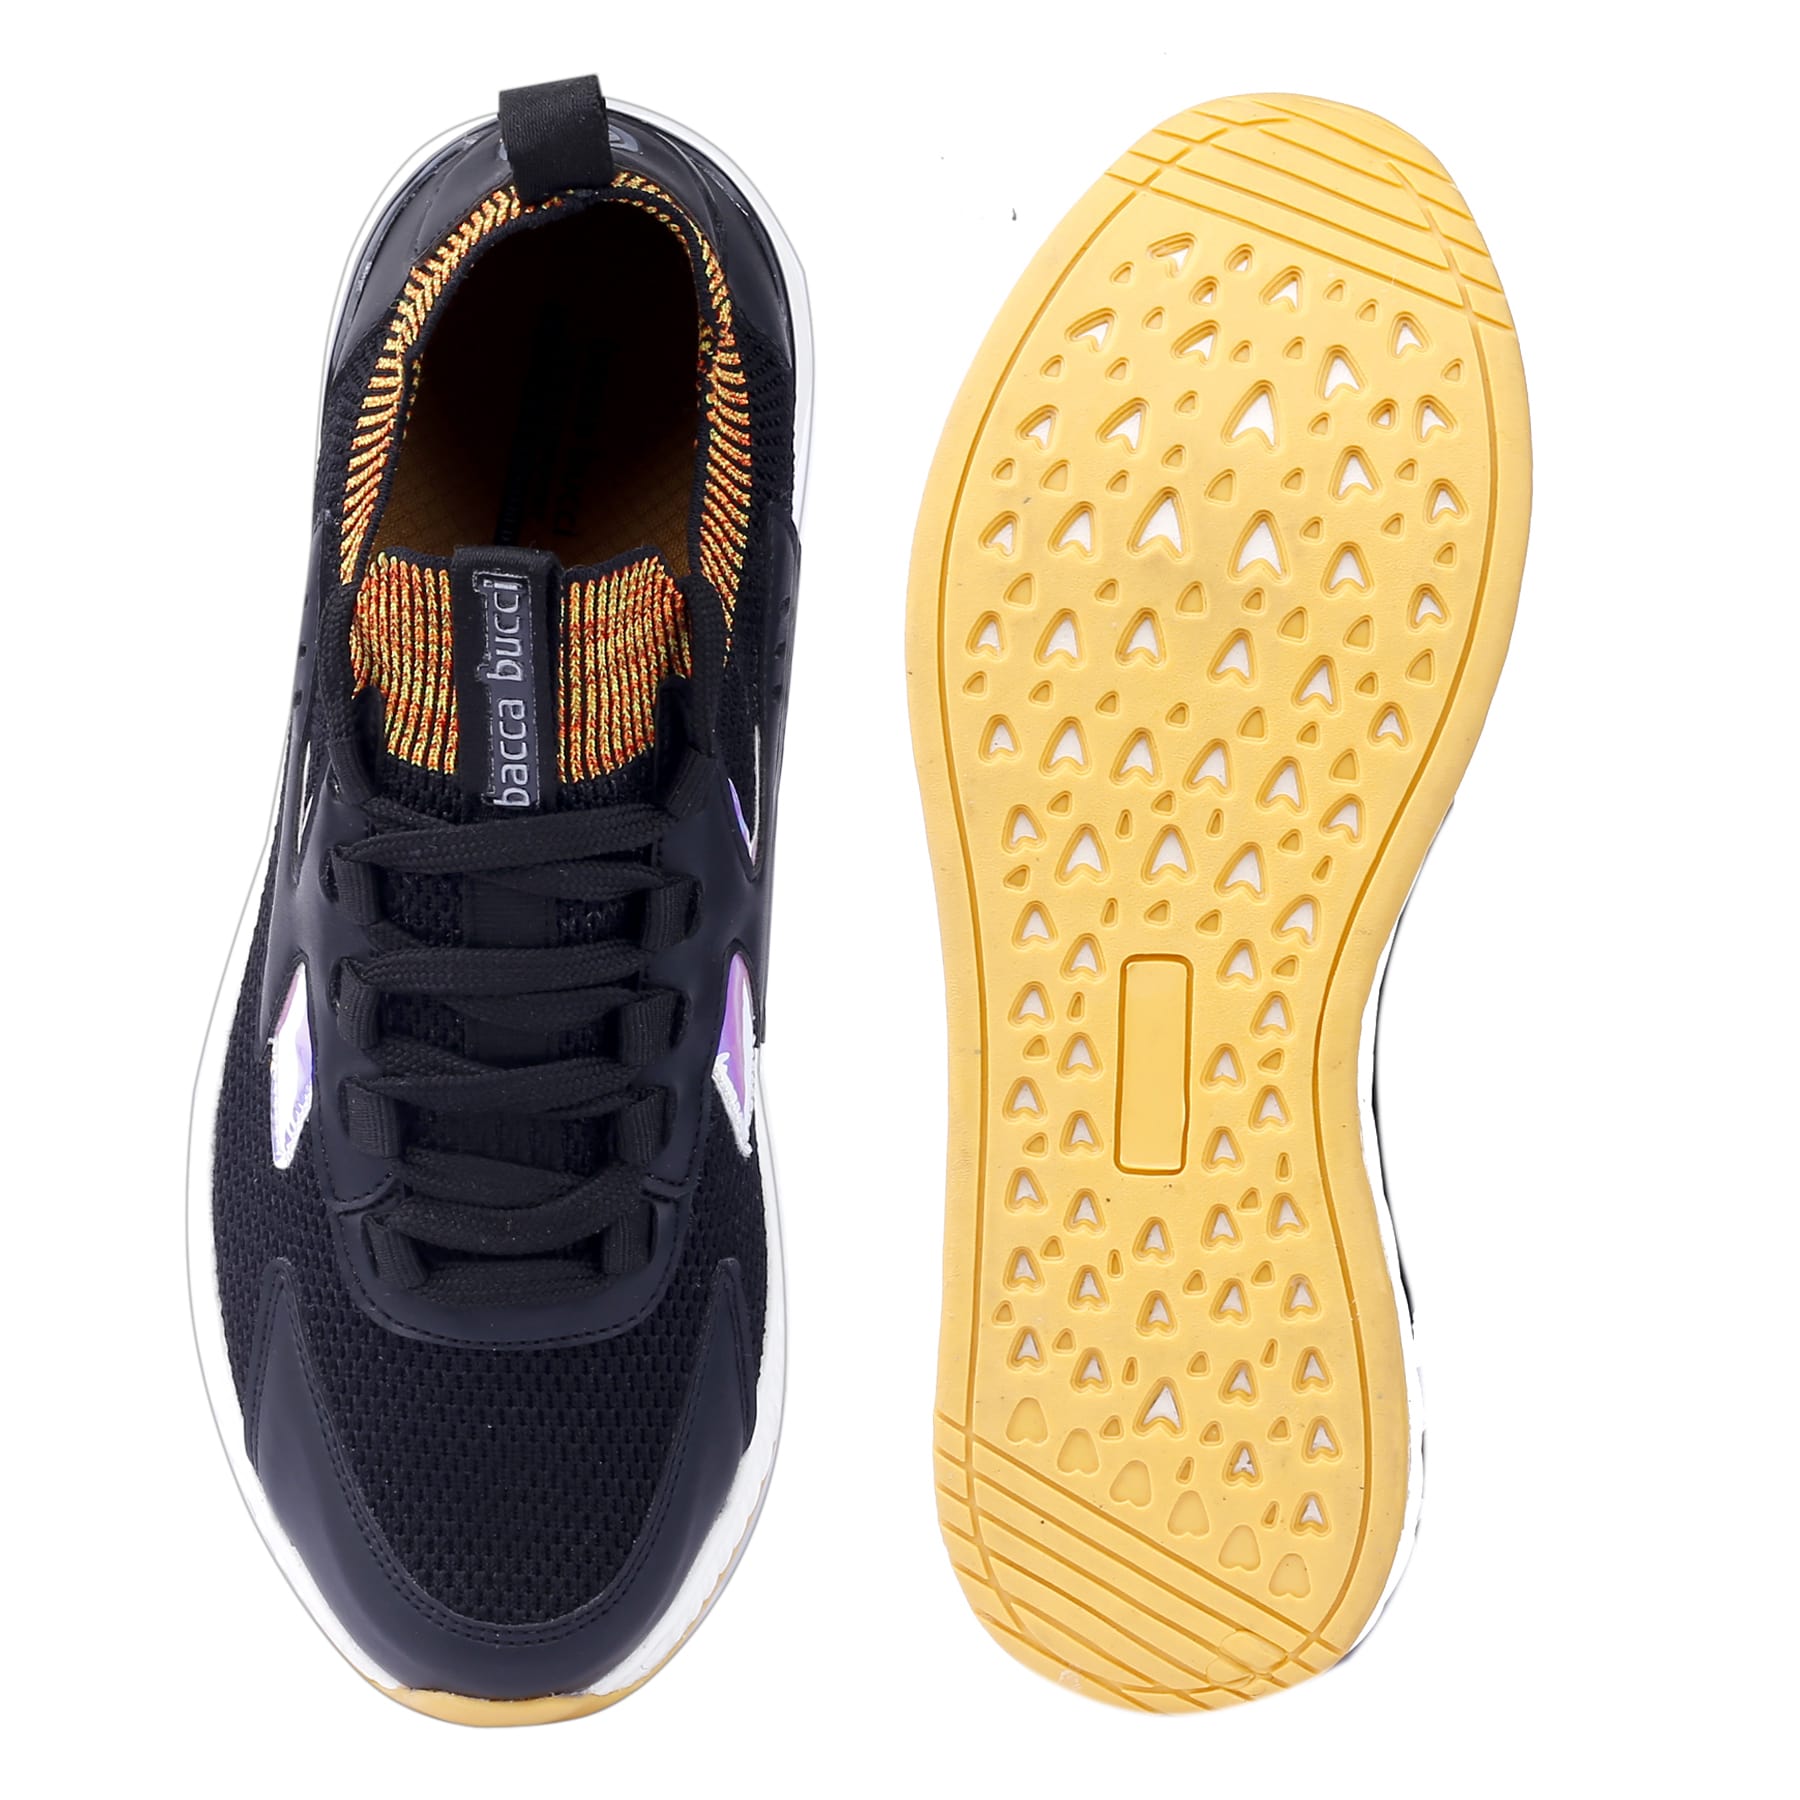 Bacca Bucci Men's Distinct Mid-Top Urban Streetwear Socks Sneaker Shoe